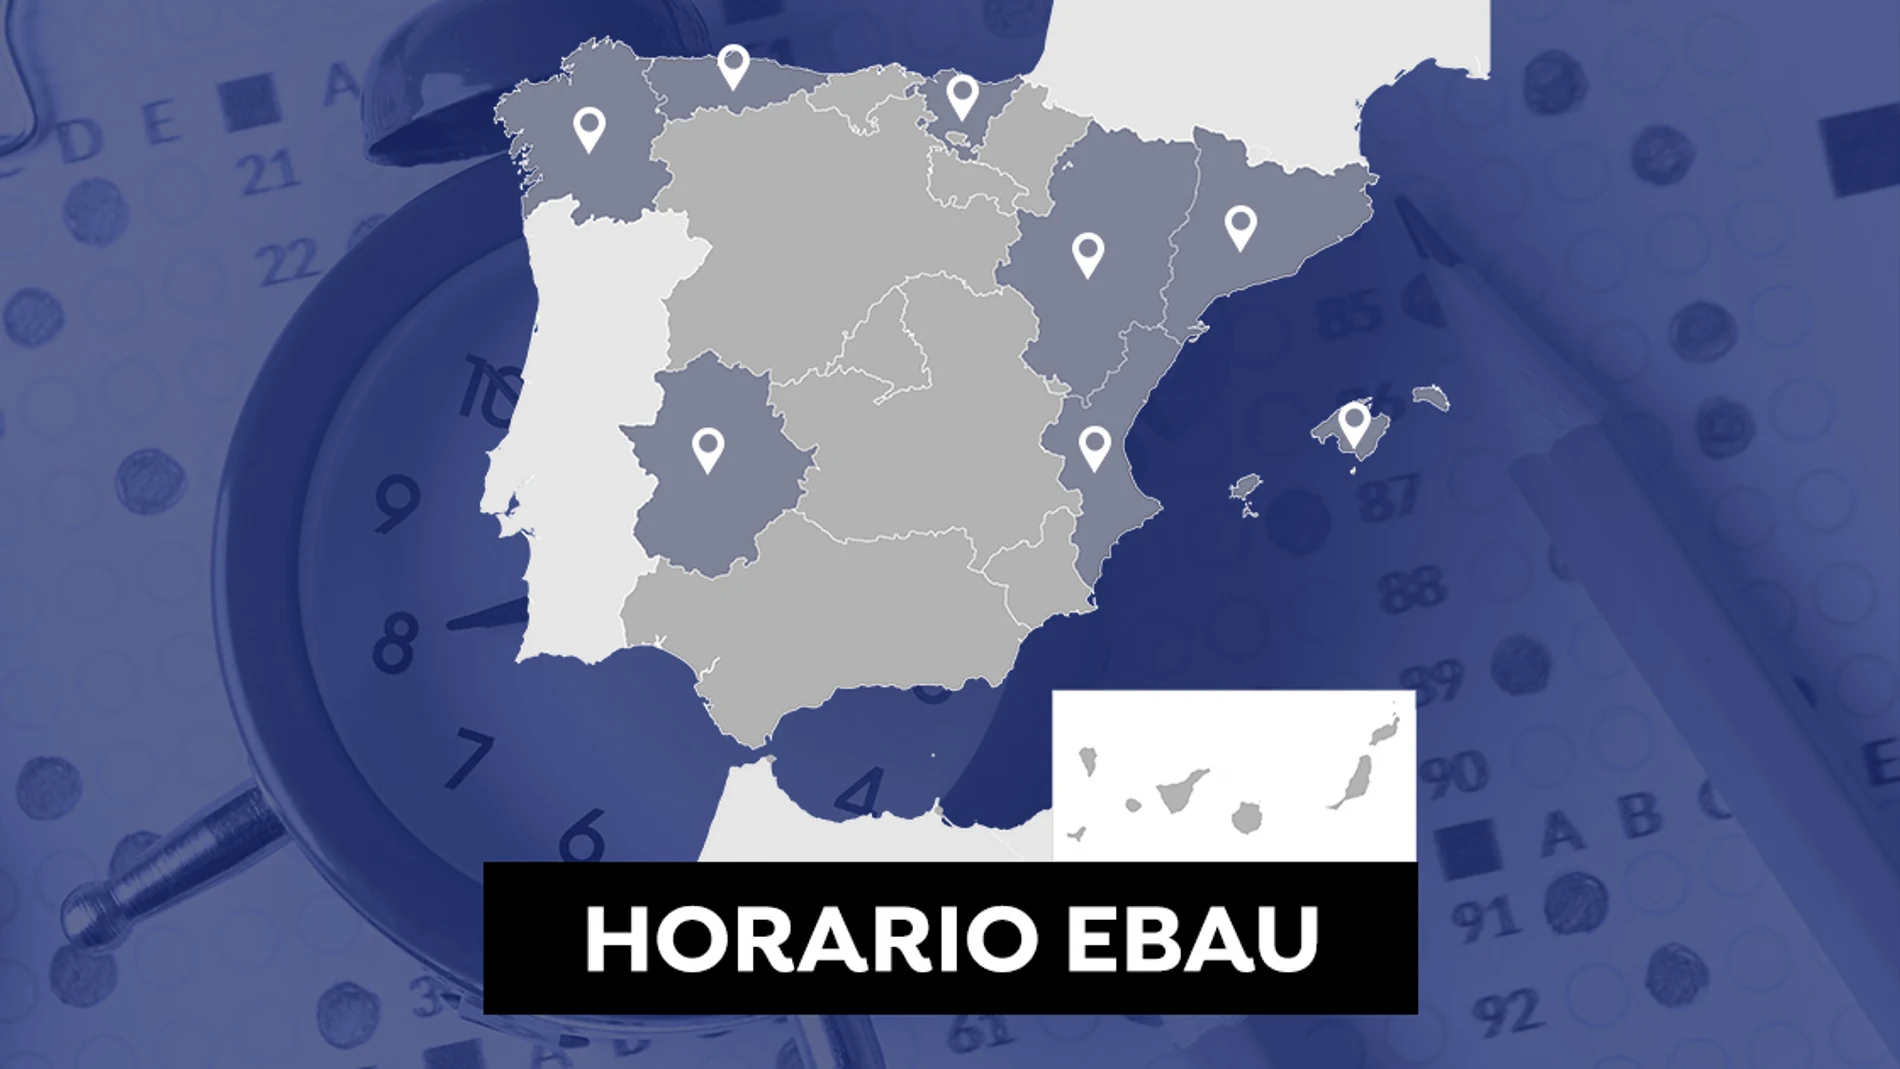 Horario de la Evau en Cataluña, Comunidad Valenciana, Aragón, Extremadura, Galicia, Asturias, País Vasco y Baleares